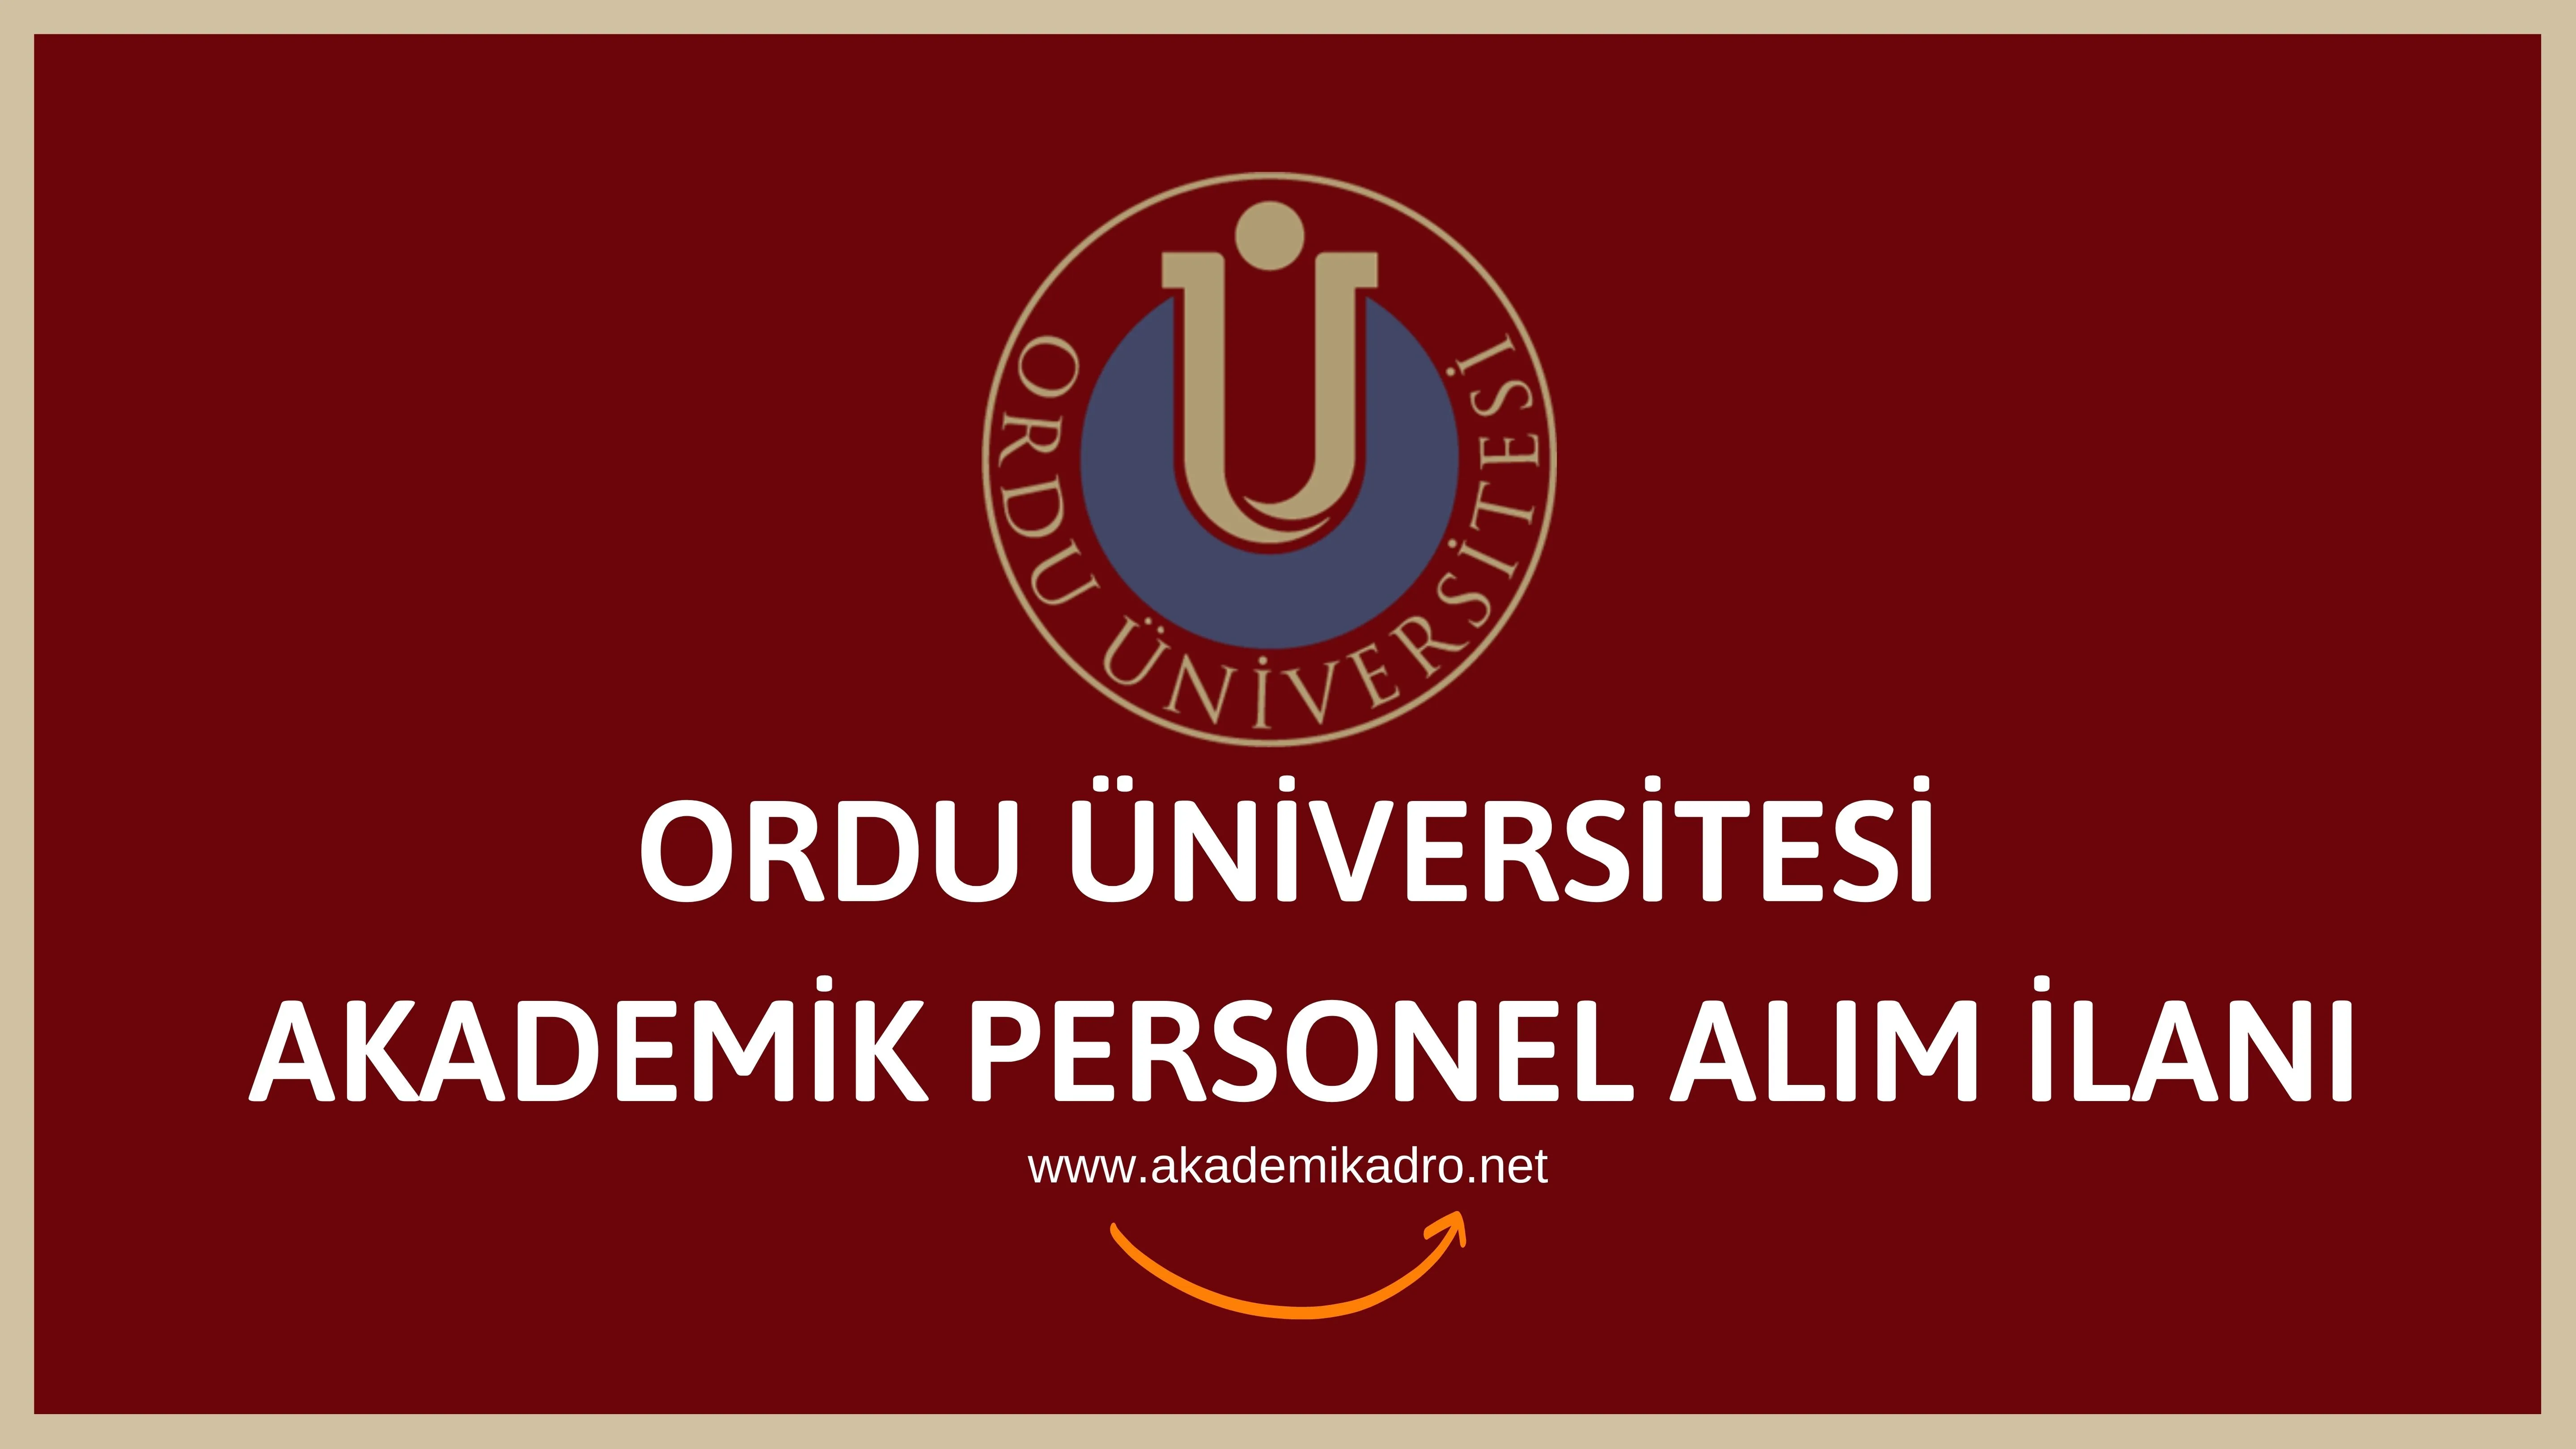 Ordu Üniversitesi 30 akademik personel alacak.